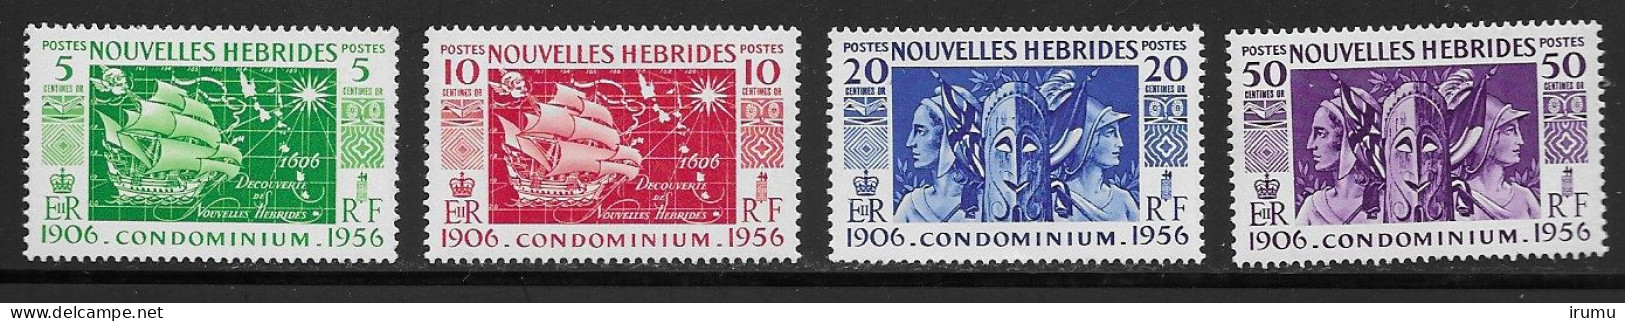 Nlle Hébrides 1956 Série Complète * (Y&T 167-170) Vc 8.5 EUR (SN 2103) - Nuevos